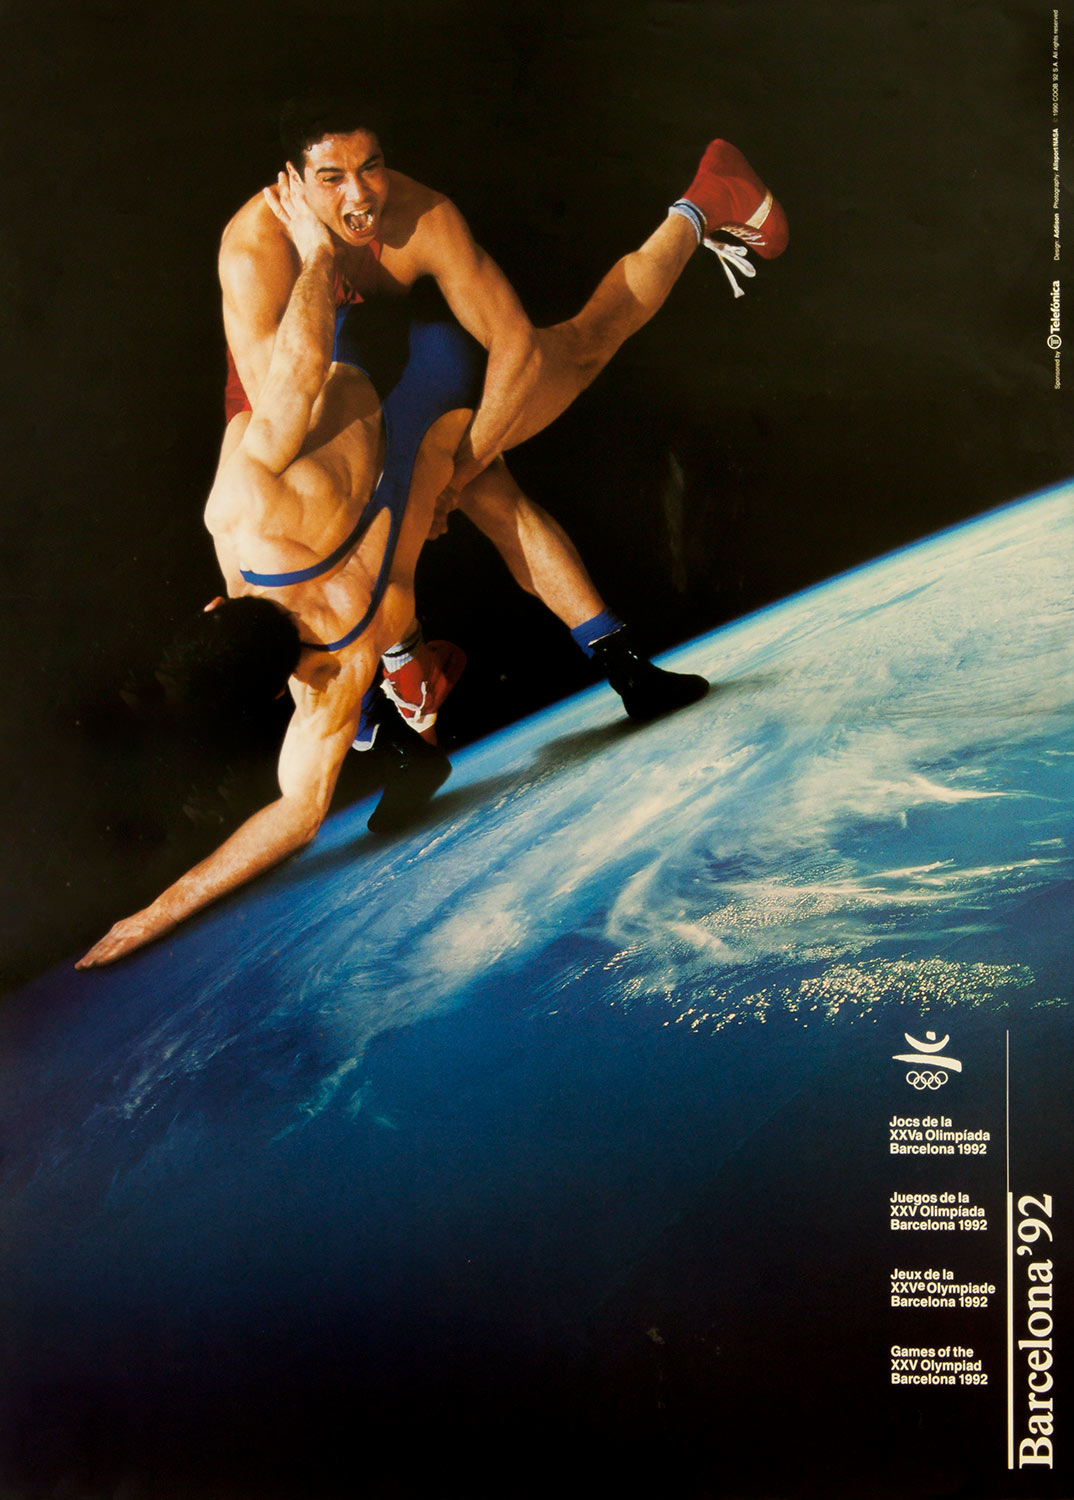 Plakat mit Abbildung zweier Ringer im Kampf. Im Hintergrund der Planet Erde